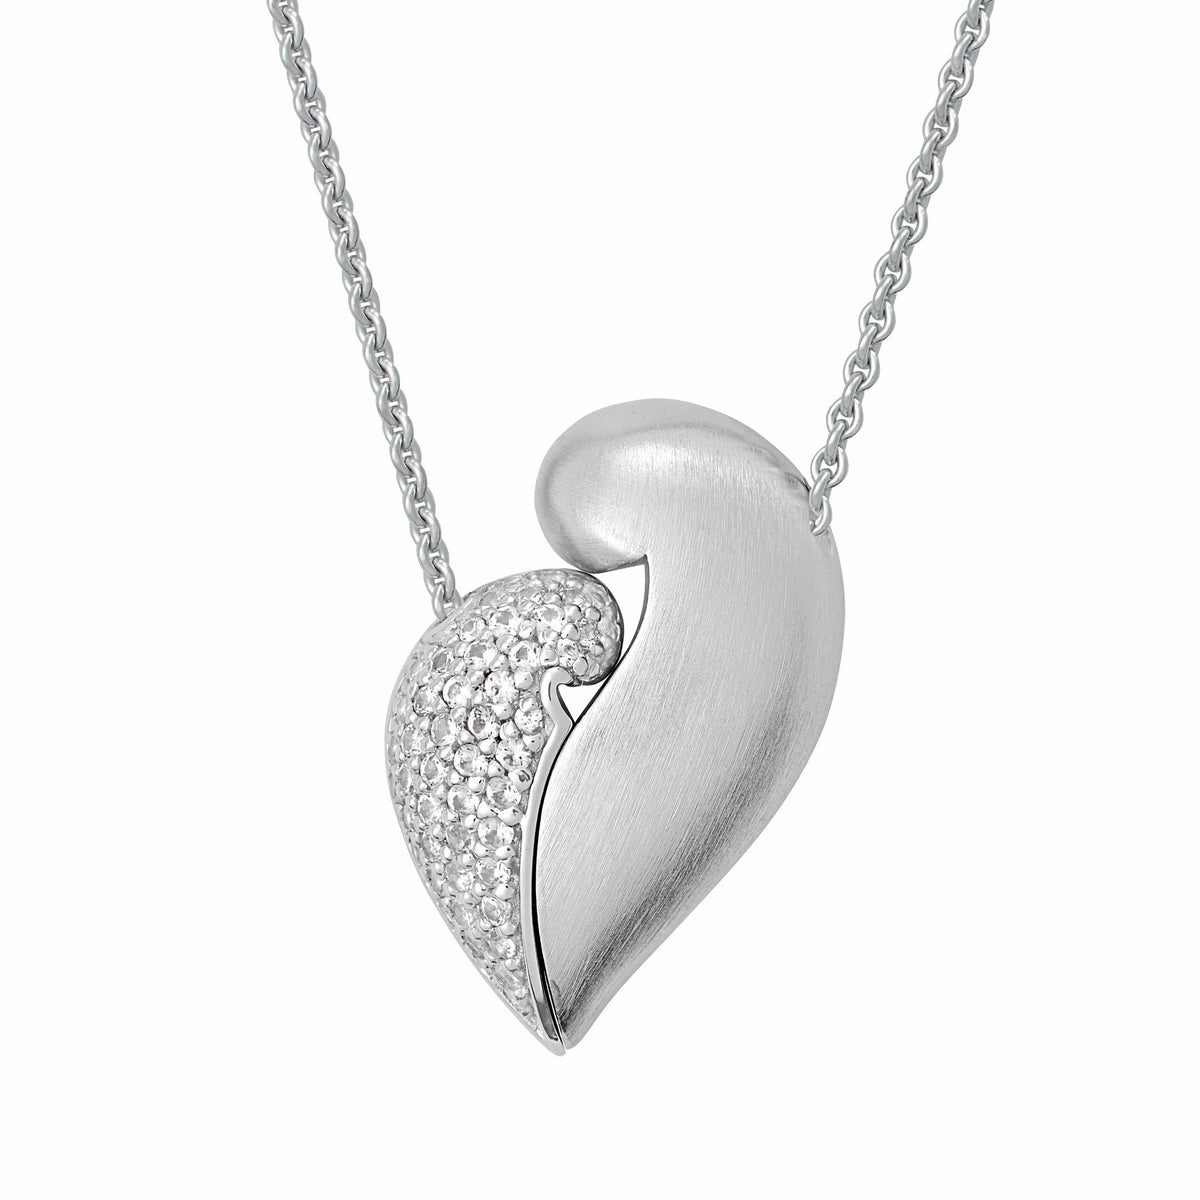 新作揃え shermer necklace Heart academy ネックレス